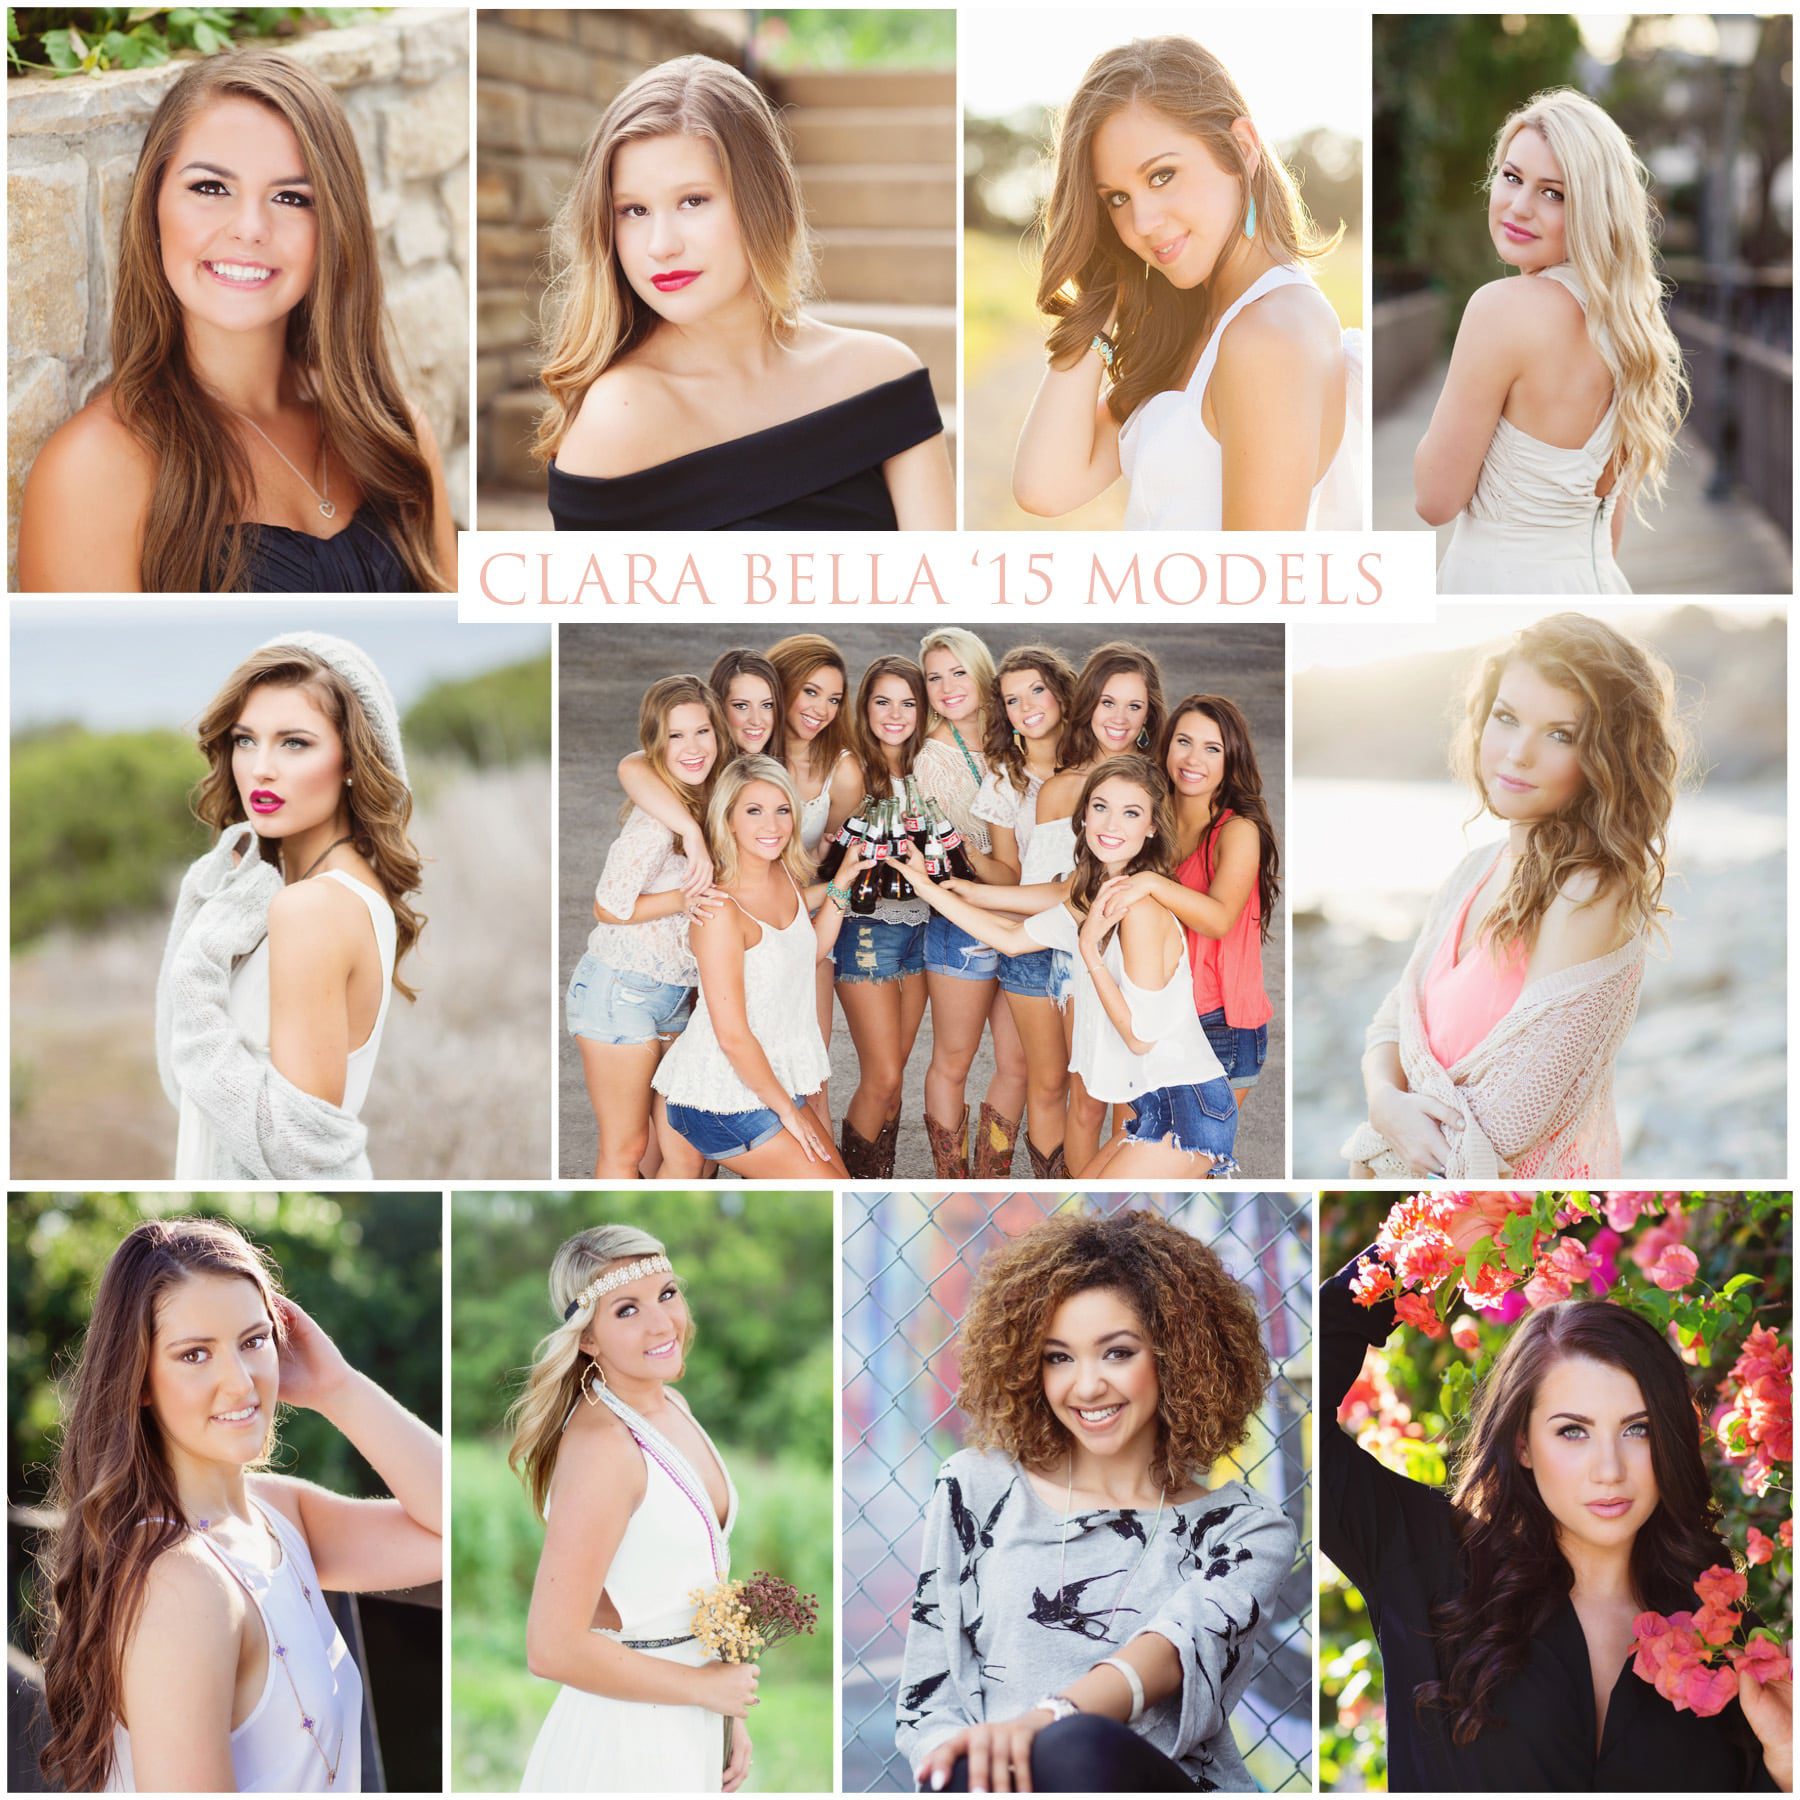 Clara Bella Models | Class of 2015